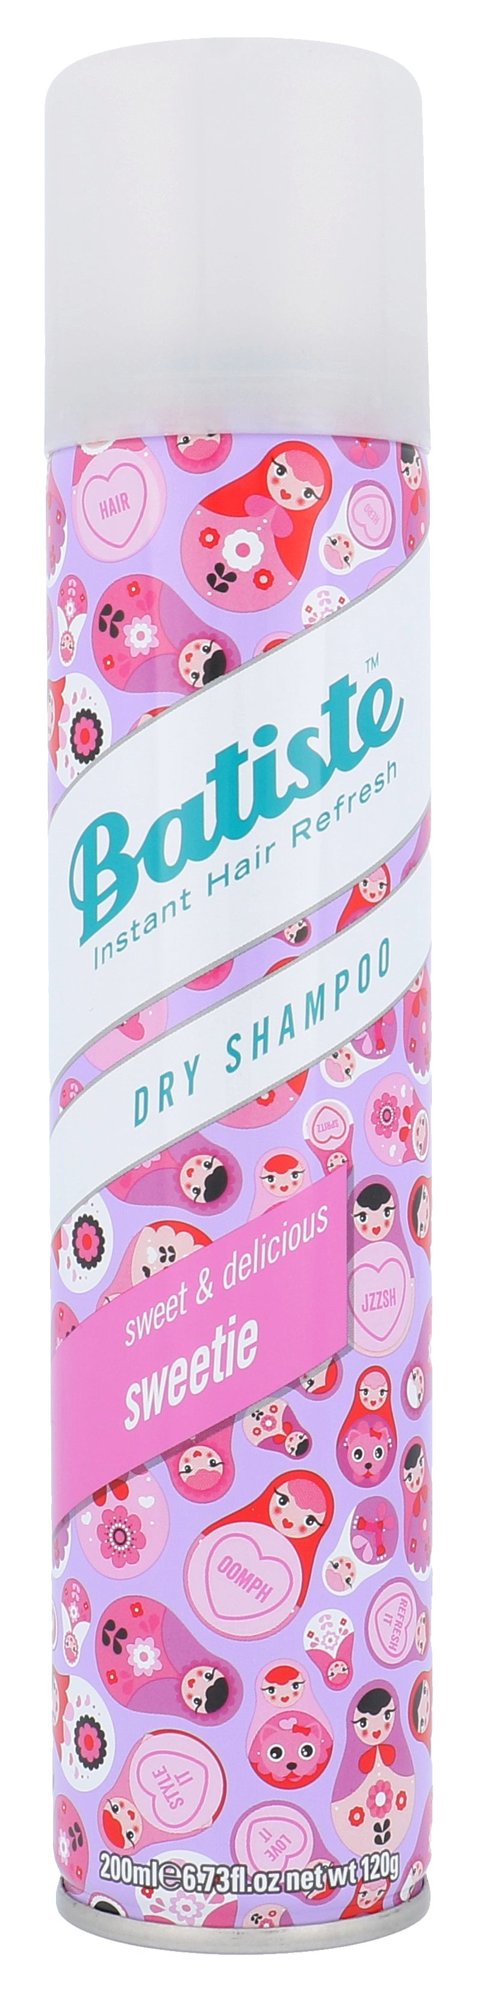 Batiste Dry Shampoo Sweetie